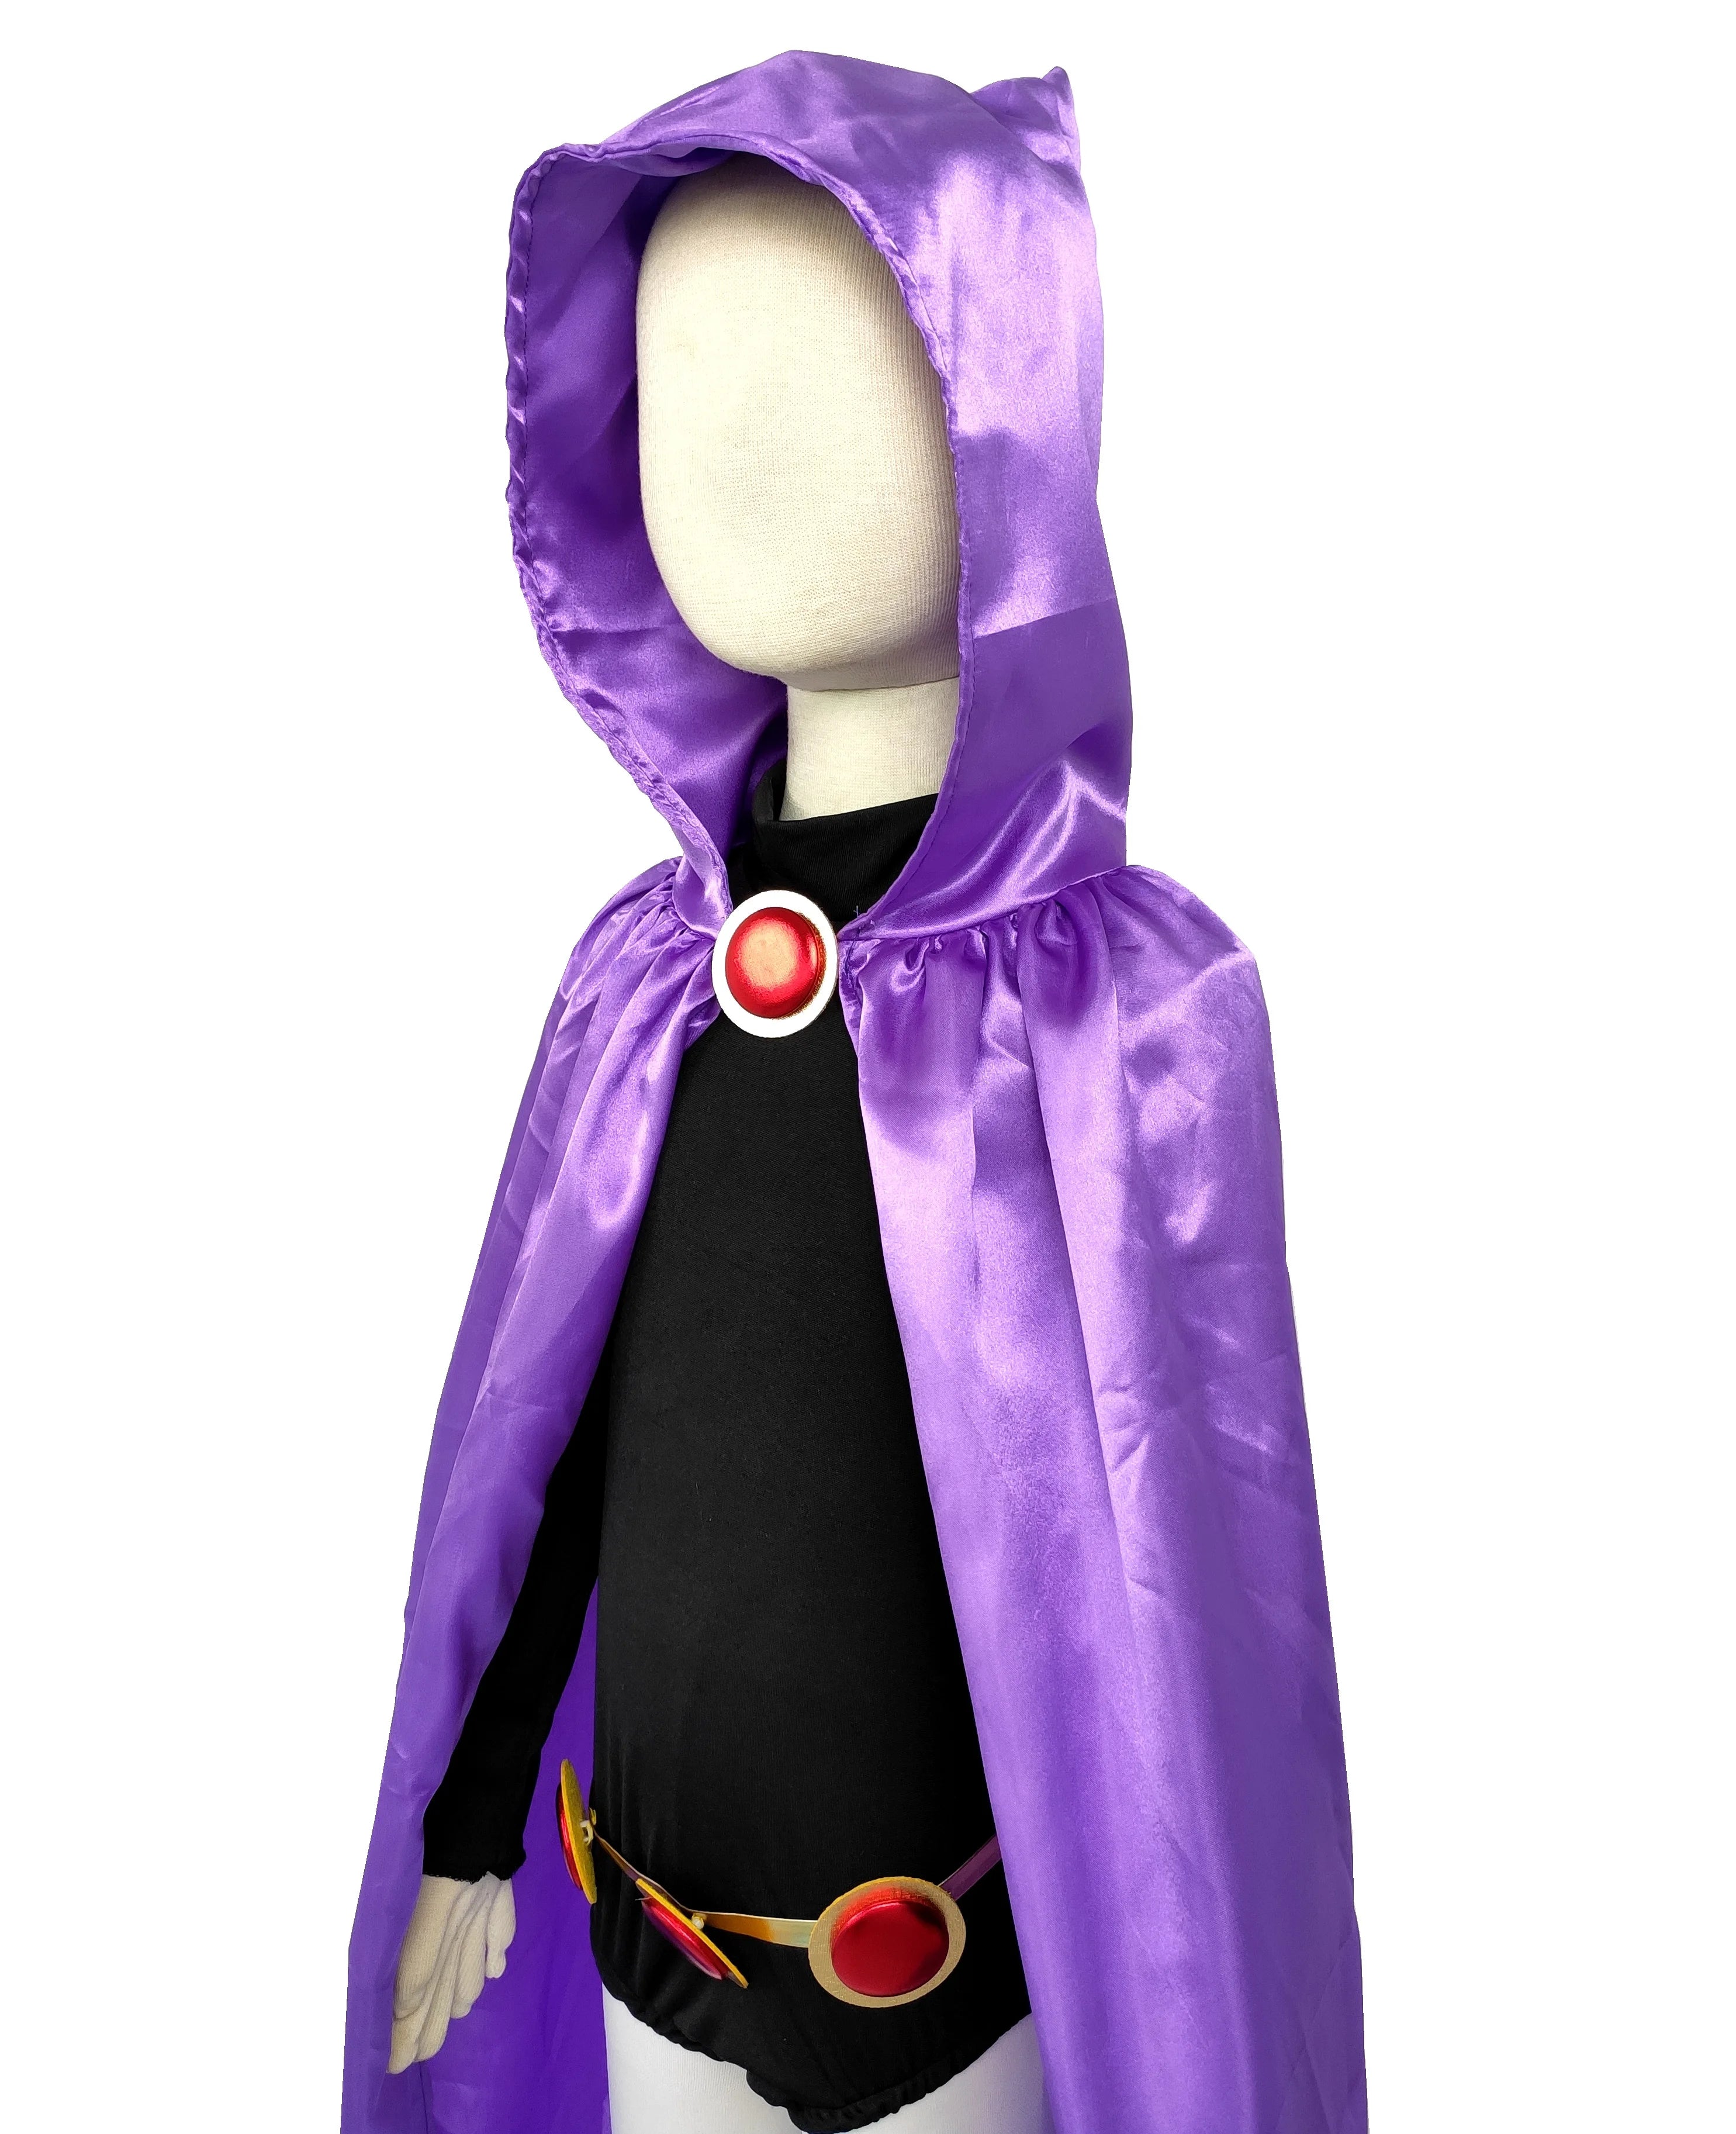 Deluxe Kids&Adult Girls Dress Titan Raven Costume for Cosplay & Halloween